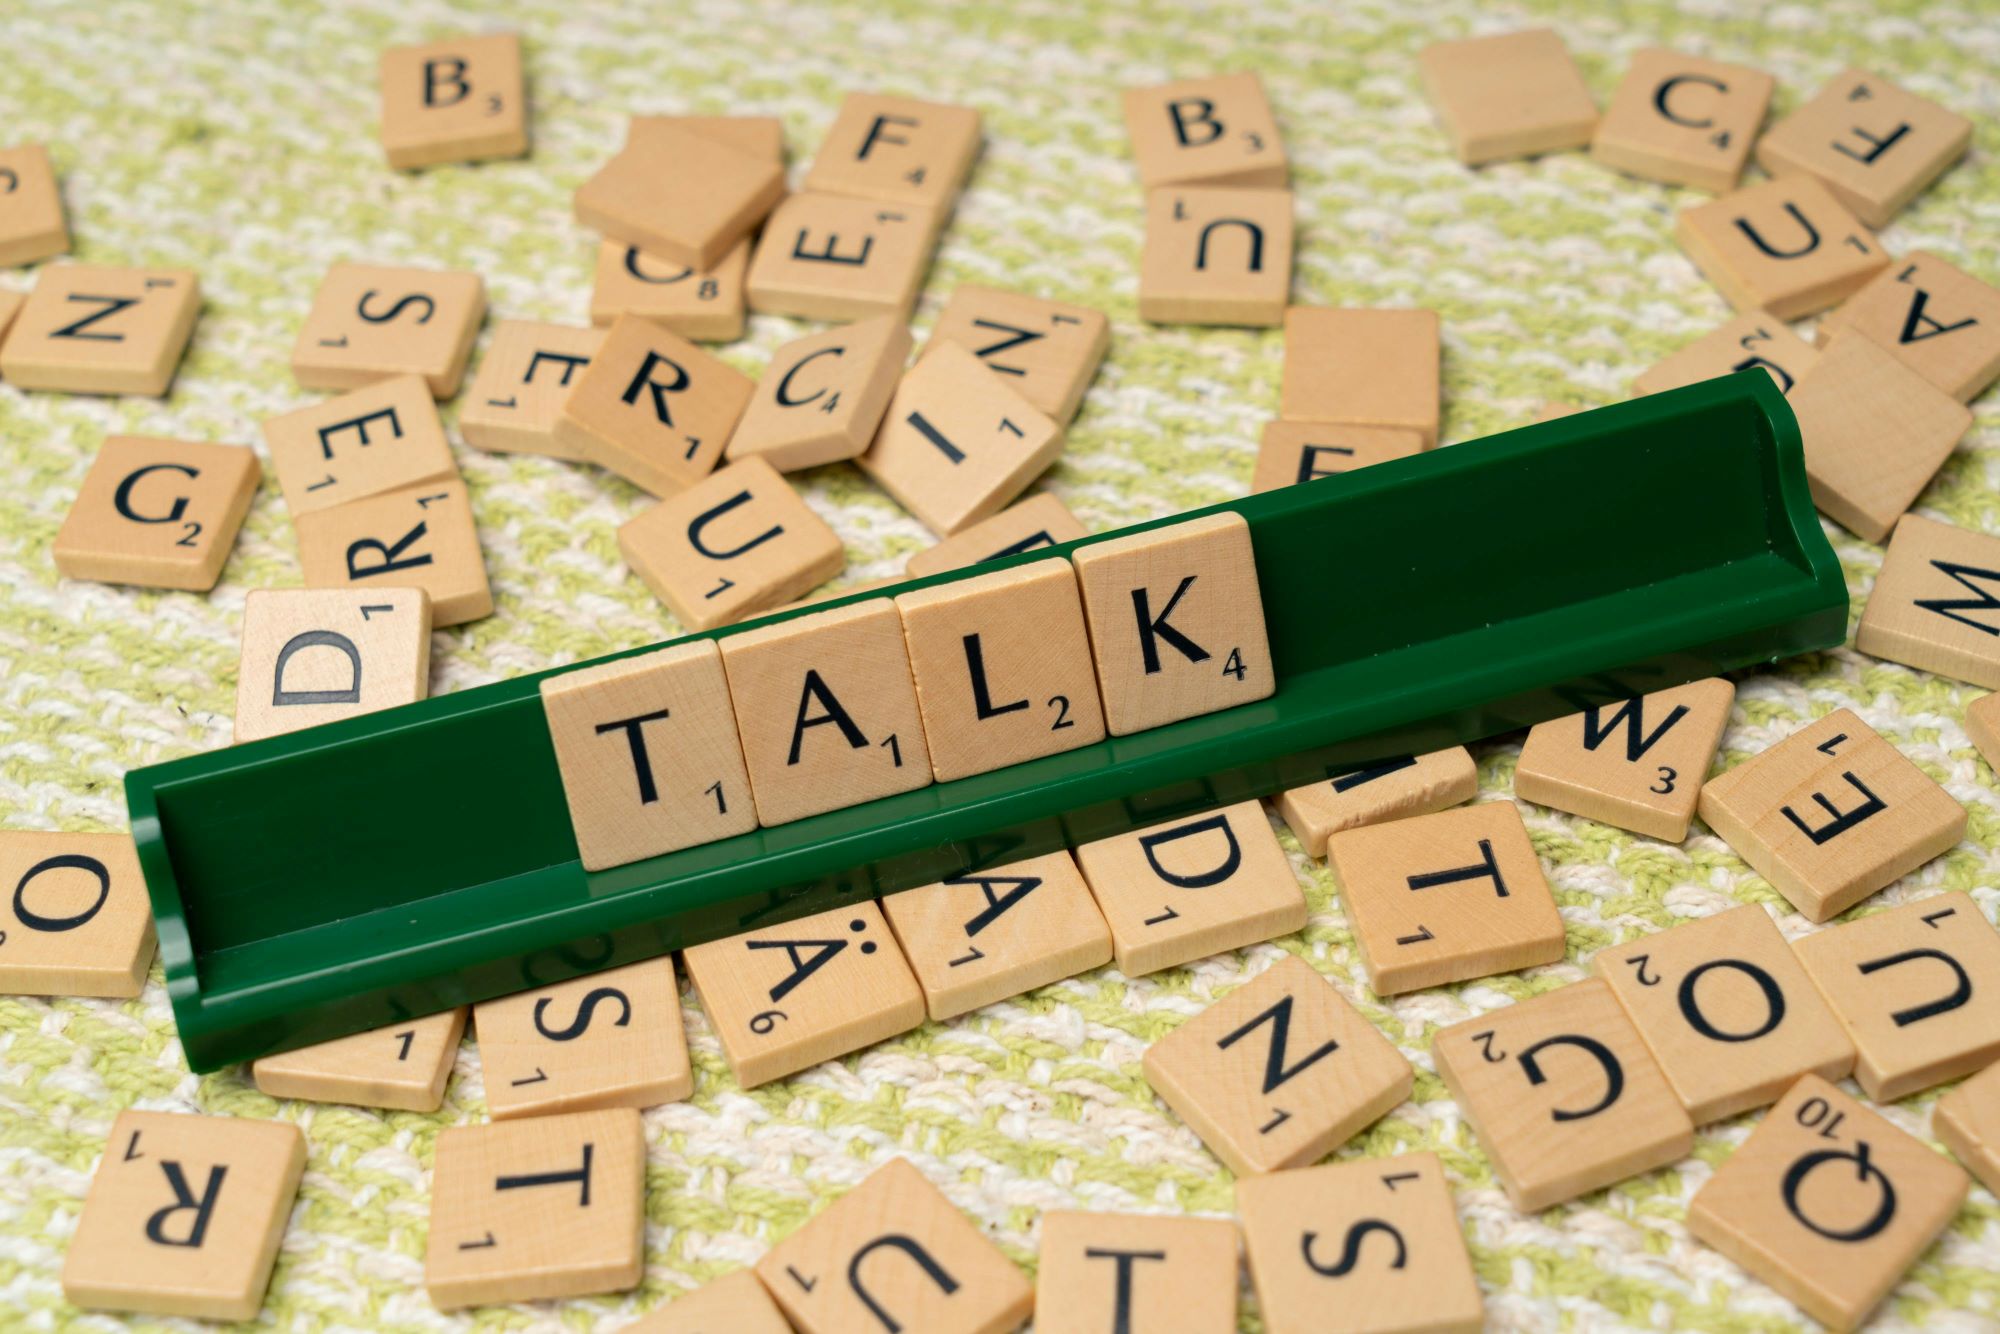 Talk, czyli mówić po angielsku, ułożone z literek Scrabble.